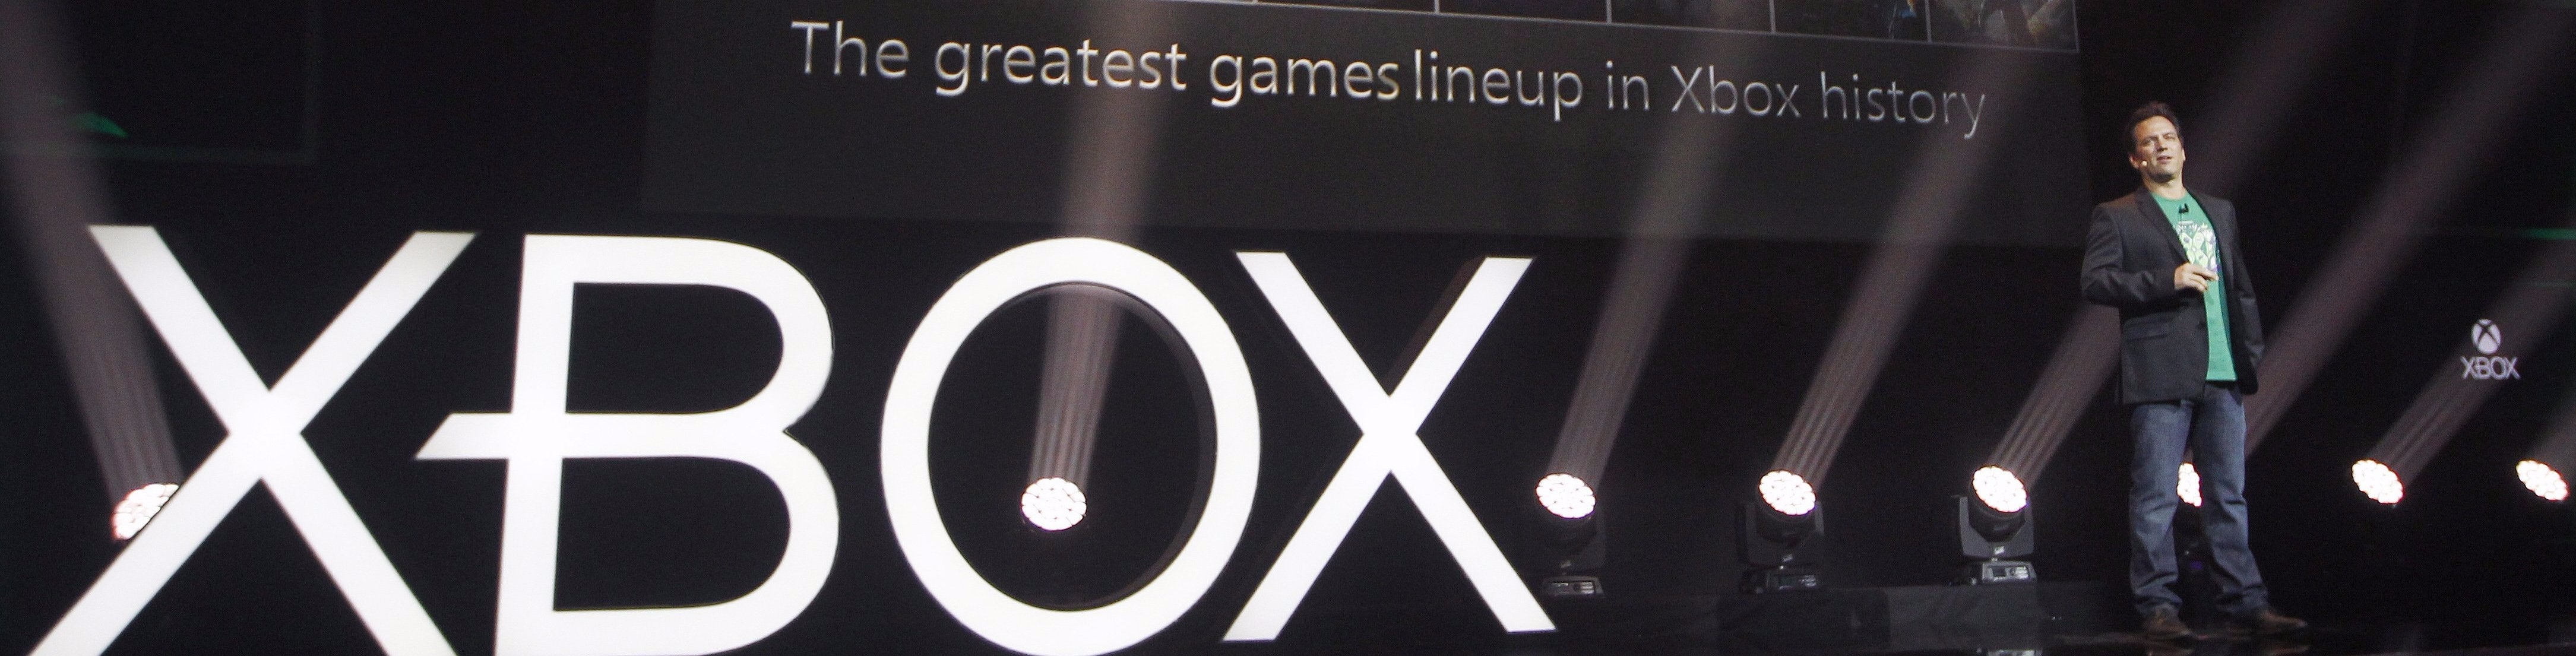 Obrazki dla „Microsoft i Xbox patrzą daleko w przyszłość” - rozmowa z Philem Spencerem